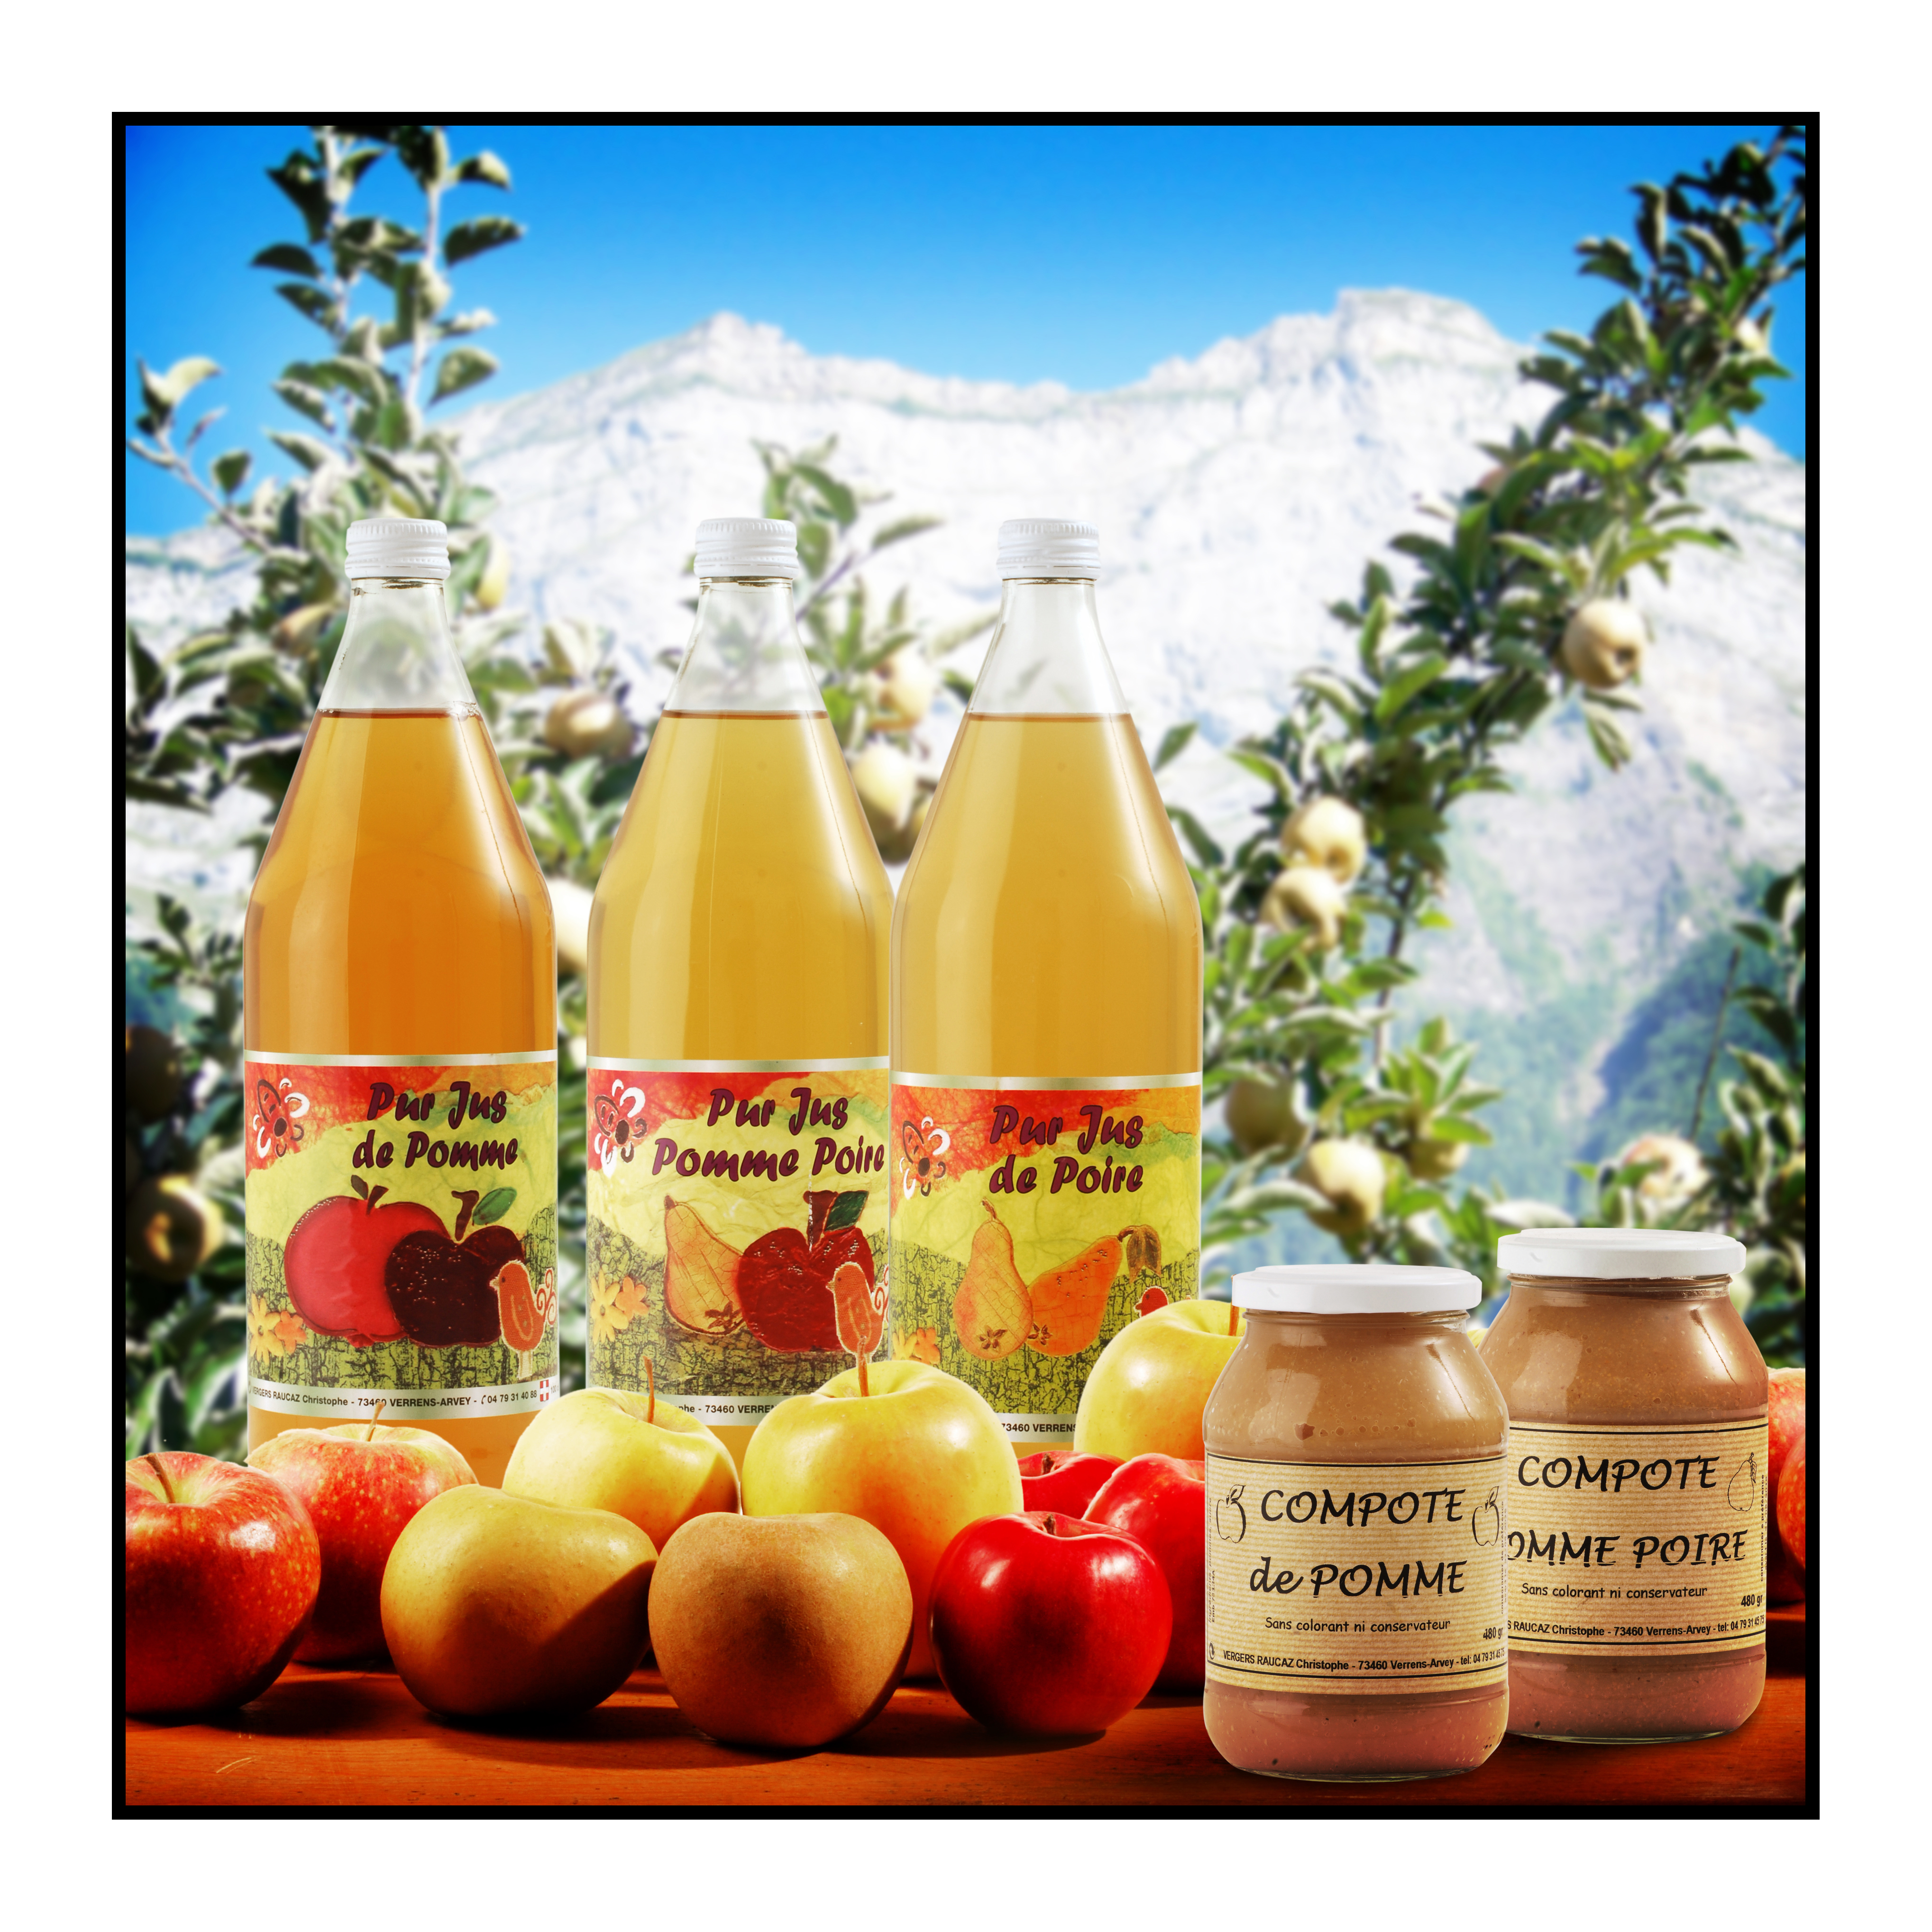 jus de pomme- compote - fruits-Pommes bio- locales- arboriculteur- ferme-magasin de producteurs - Gilly sur Isère / Albertville- savoie - terroir